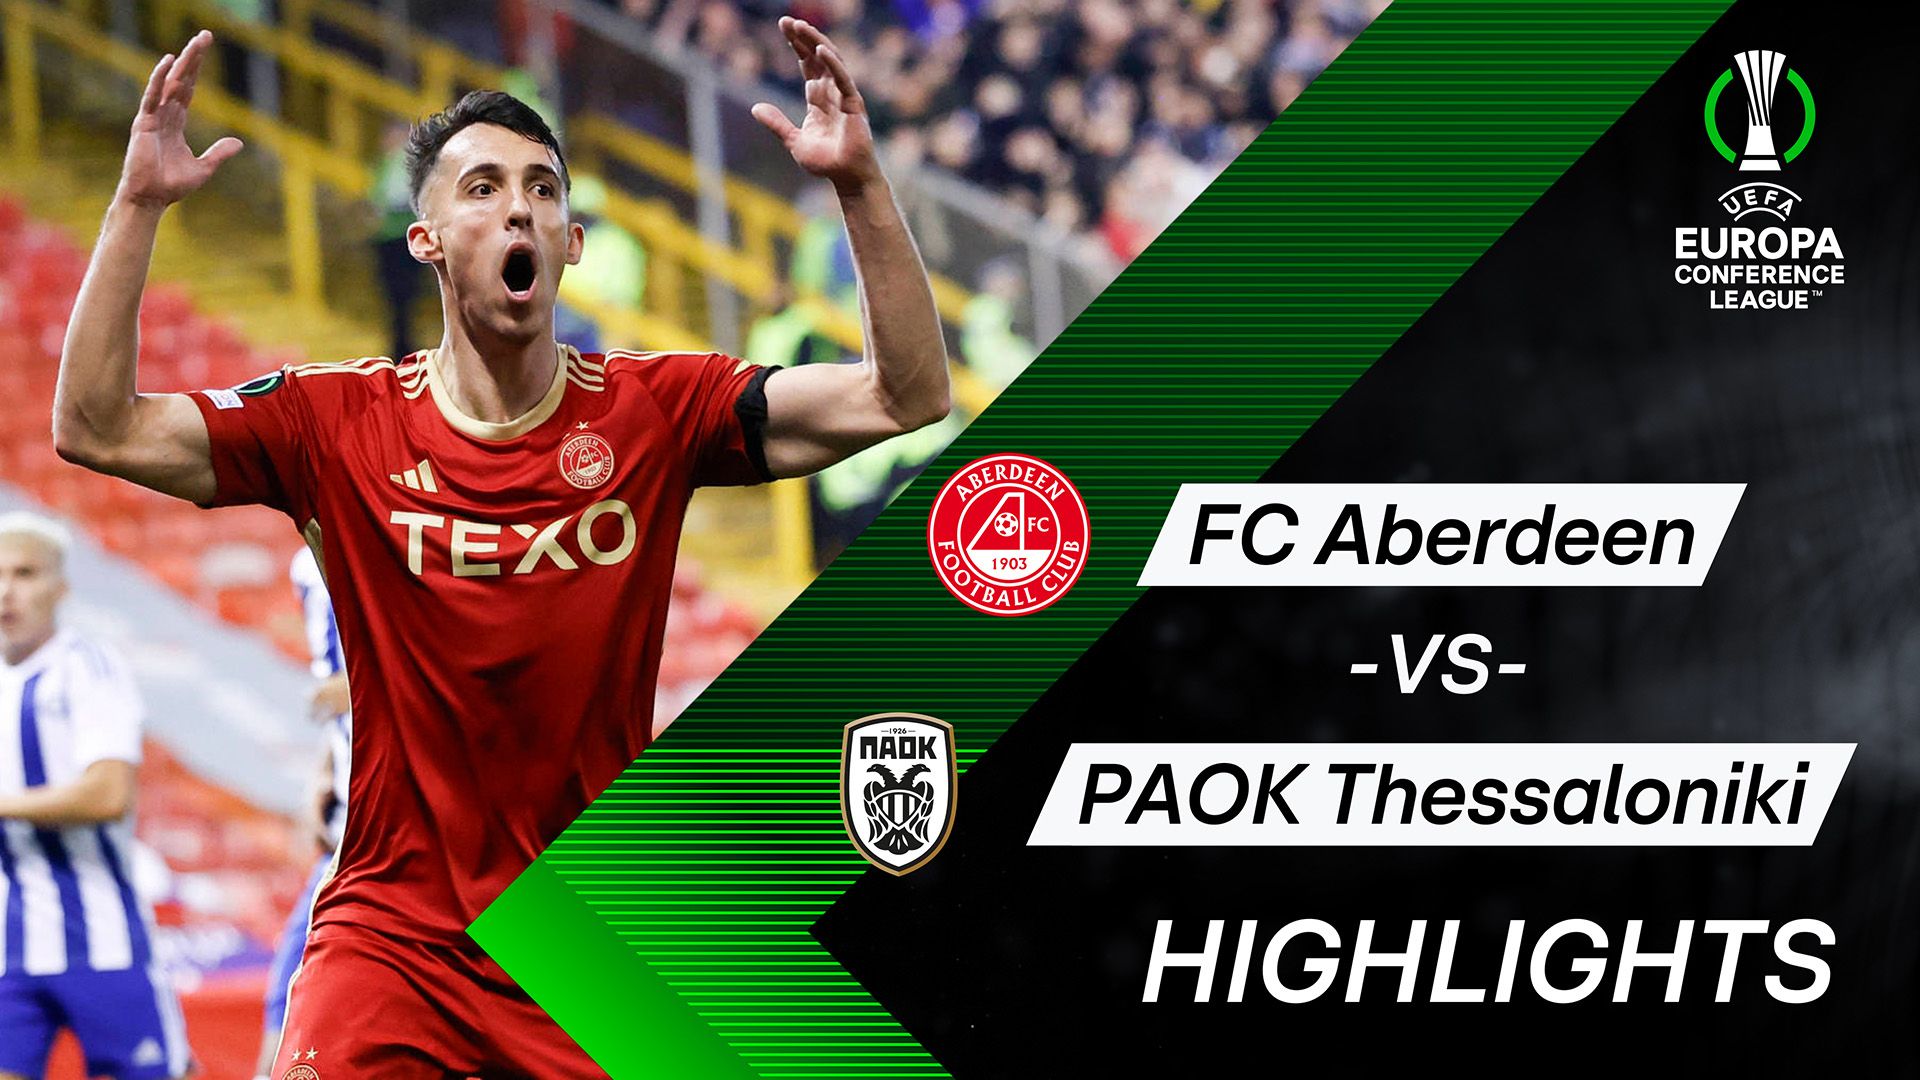 Highlights: FC Aberdeen vs. PAOK Thessaloniki